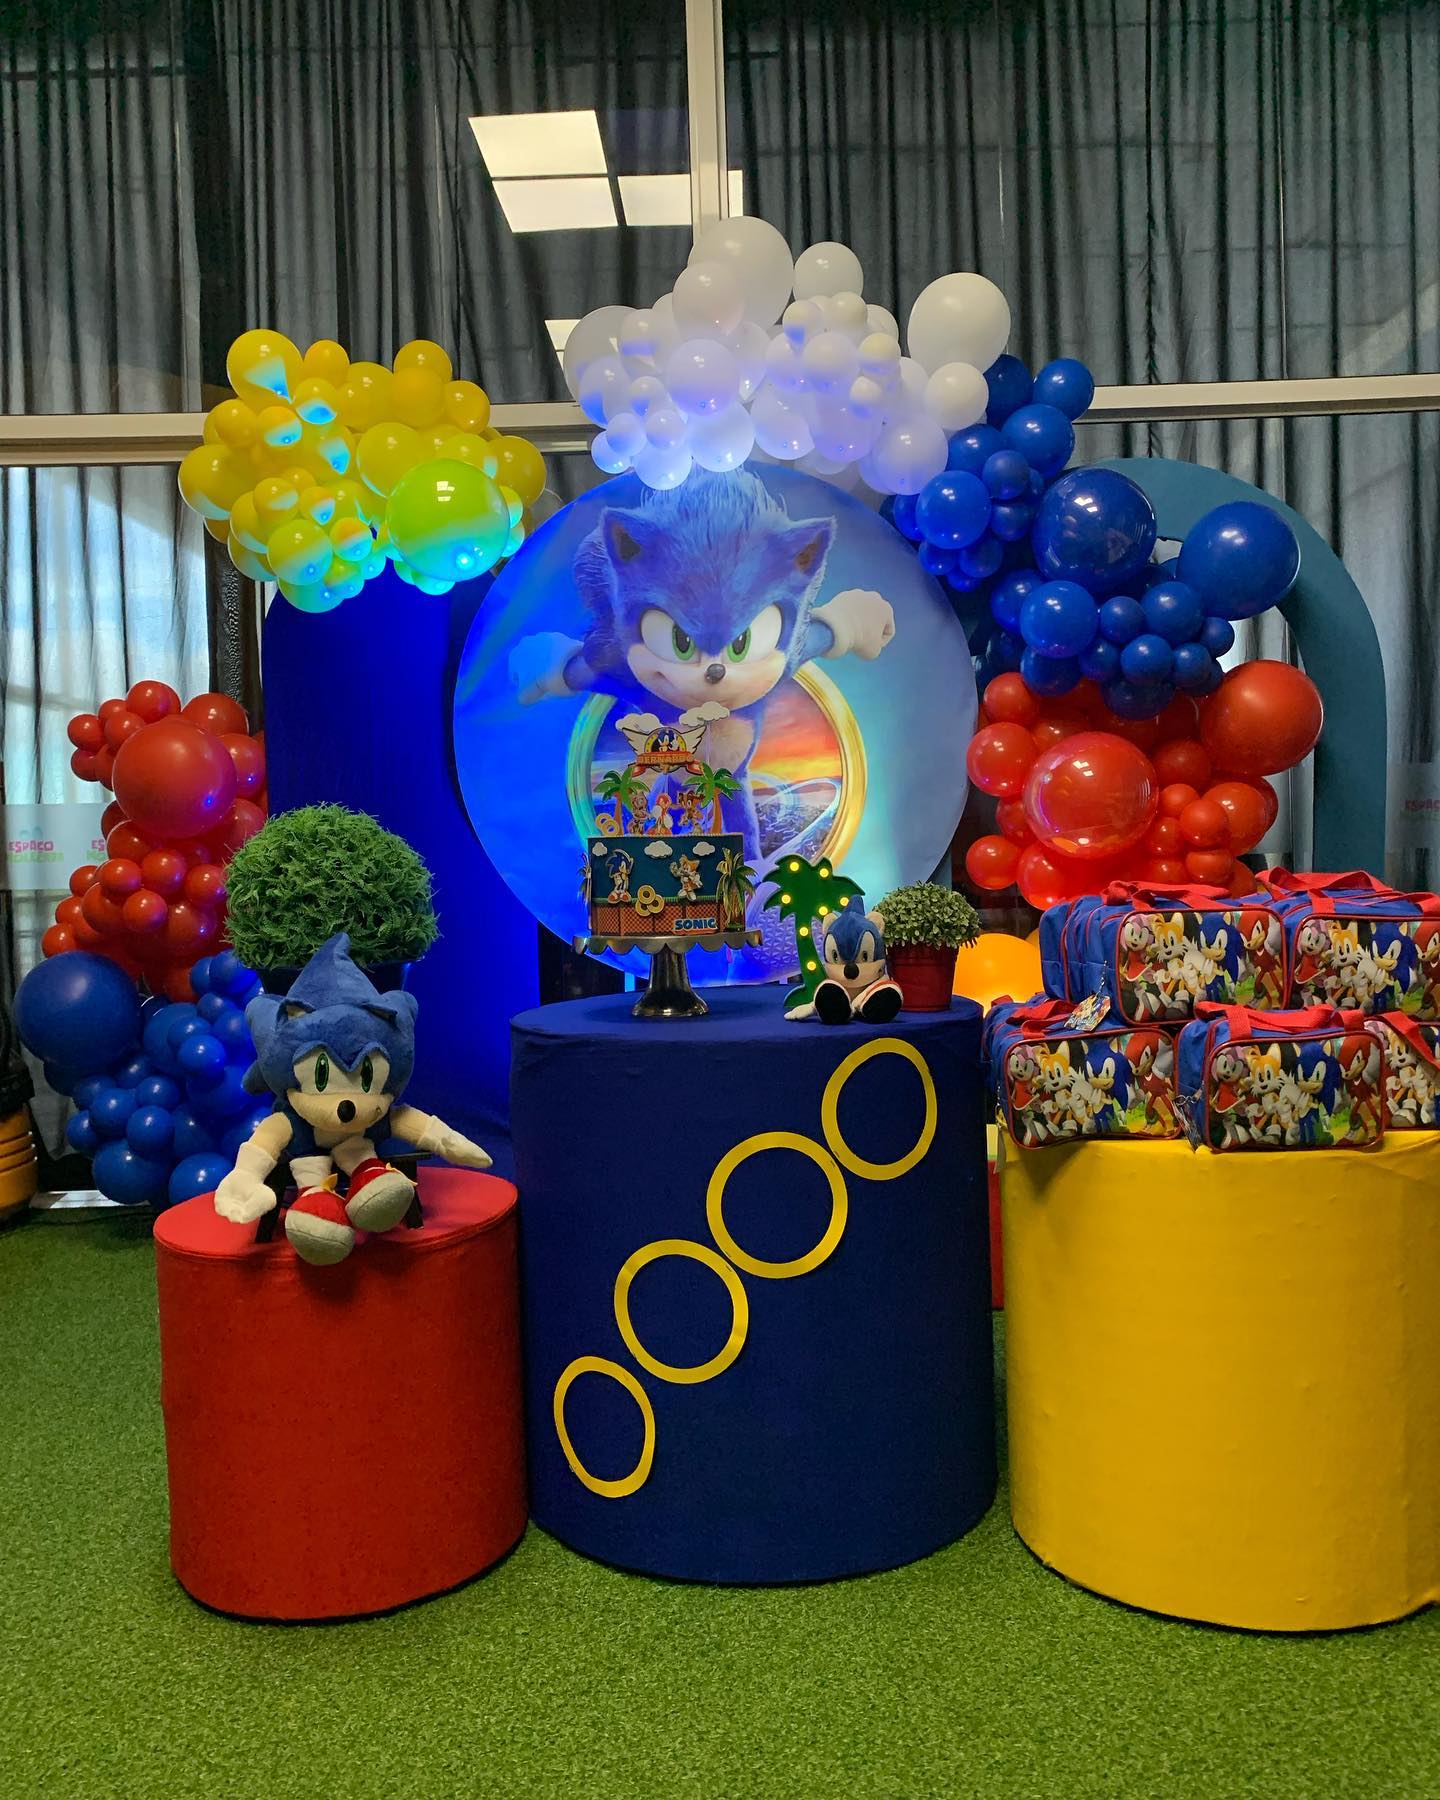 Fiesta de Sonic: Decoraciones, fondos, dulceros, pasteles y mucho más